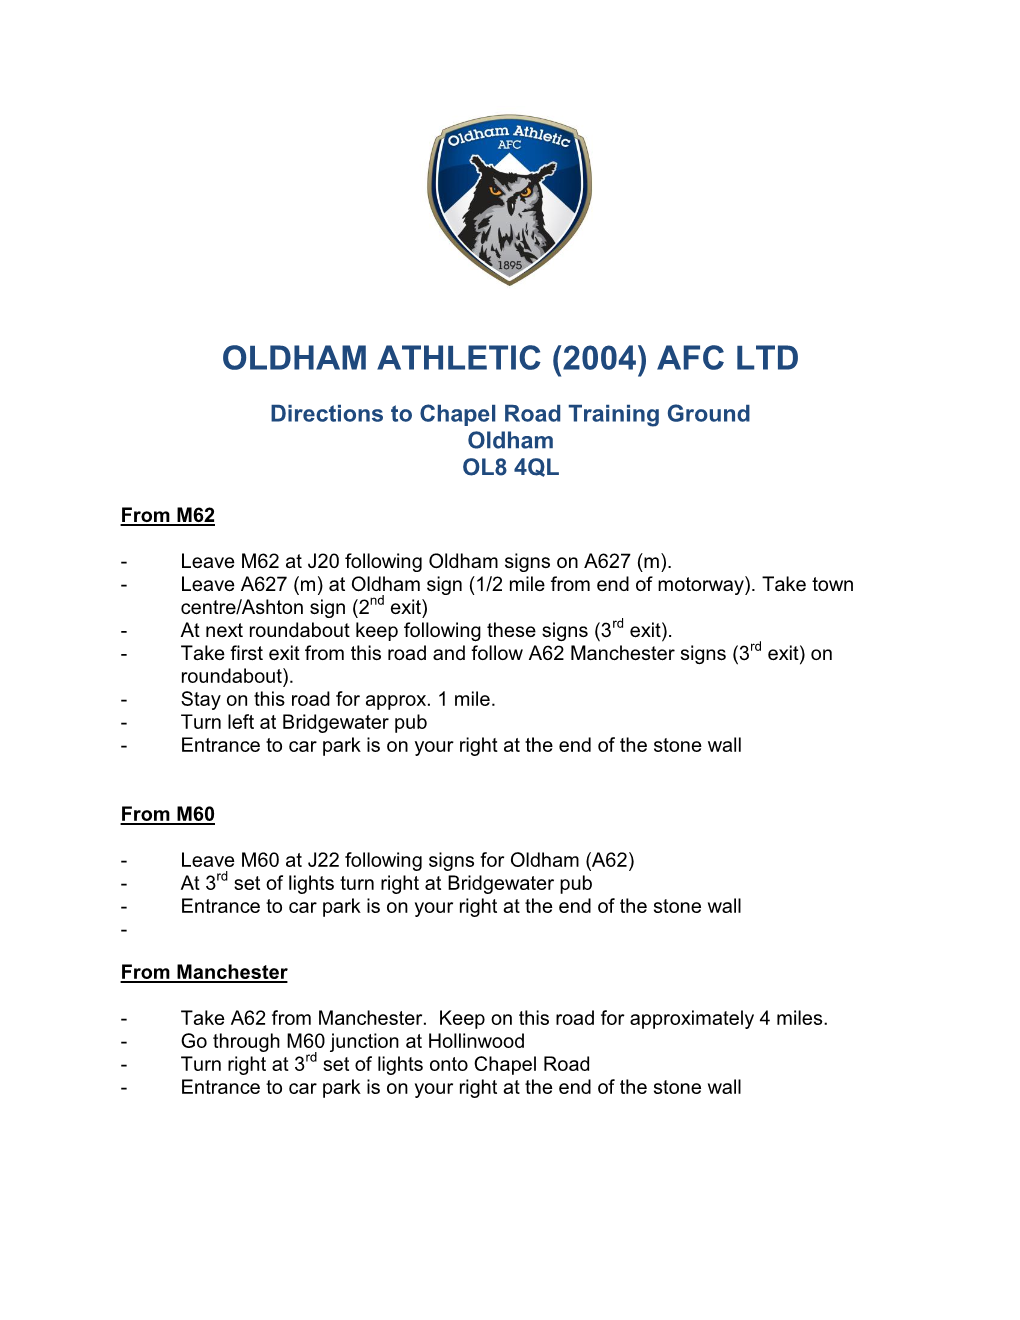 Oldham Athletic (2004) Afc Ltd